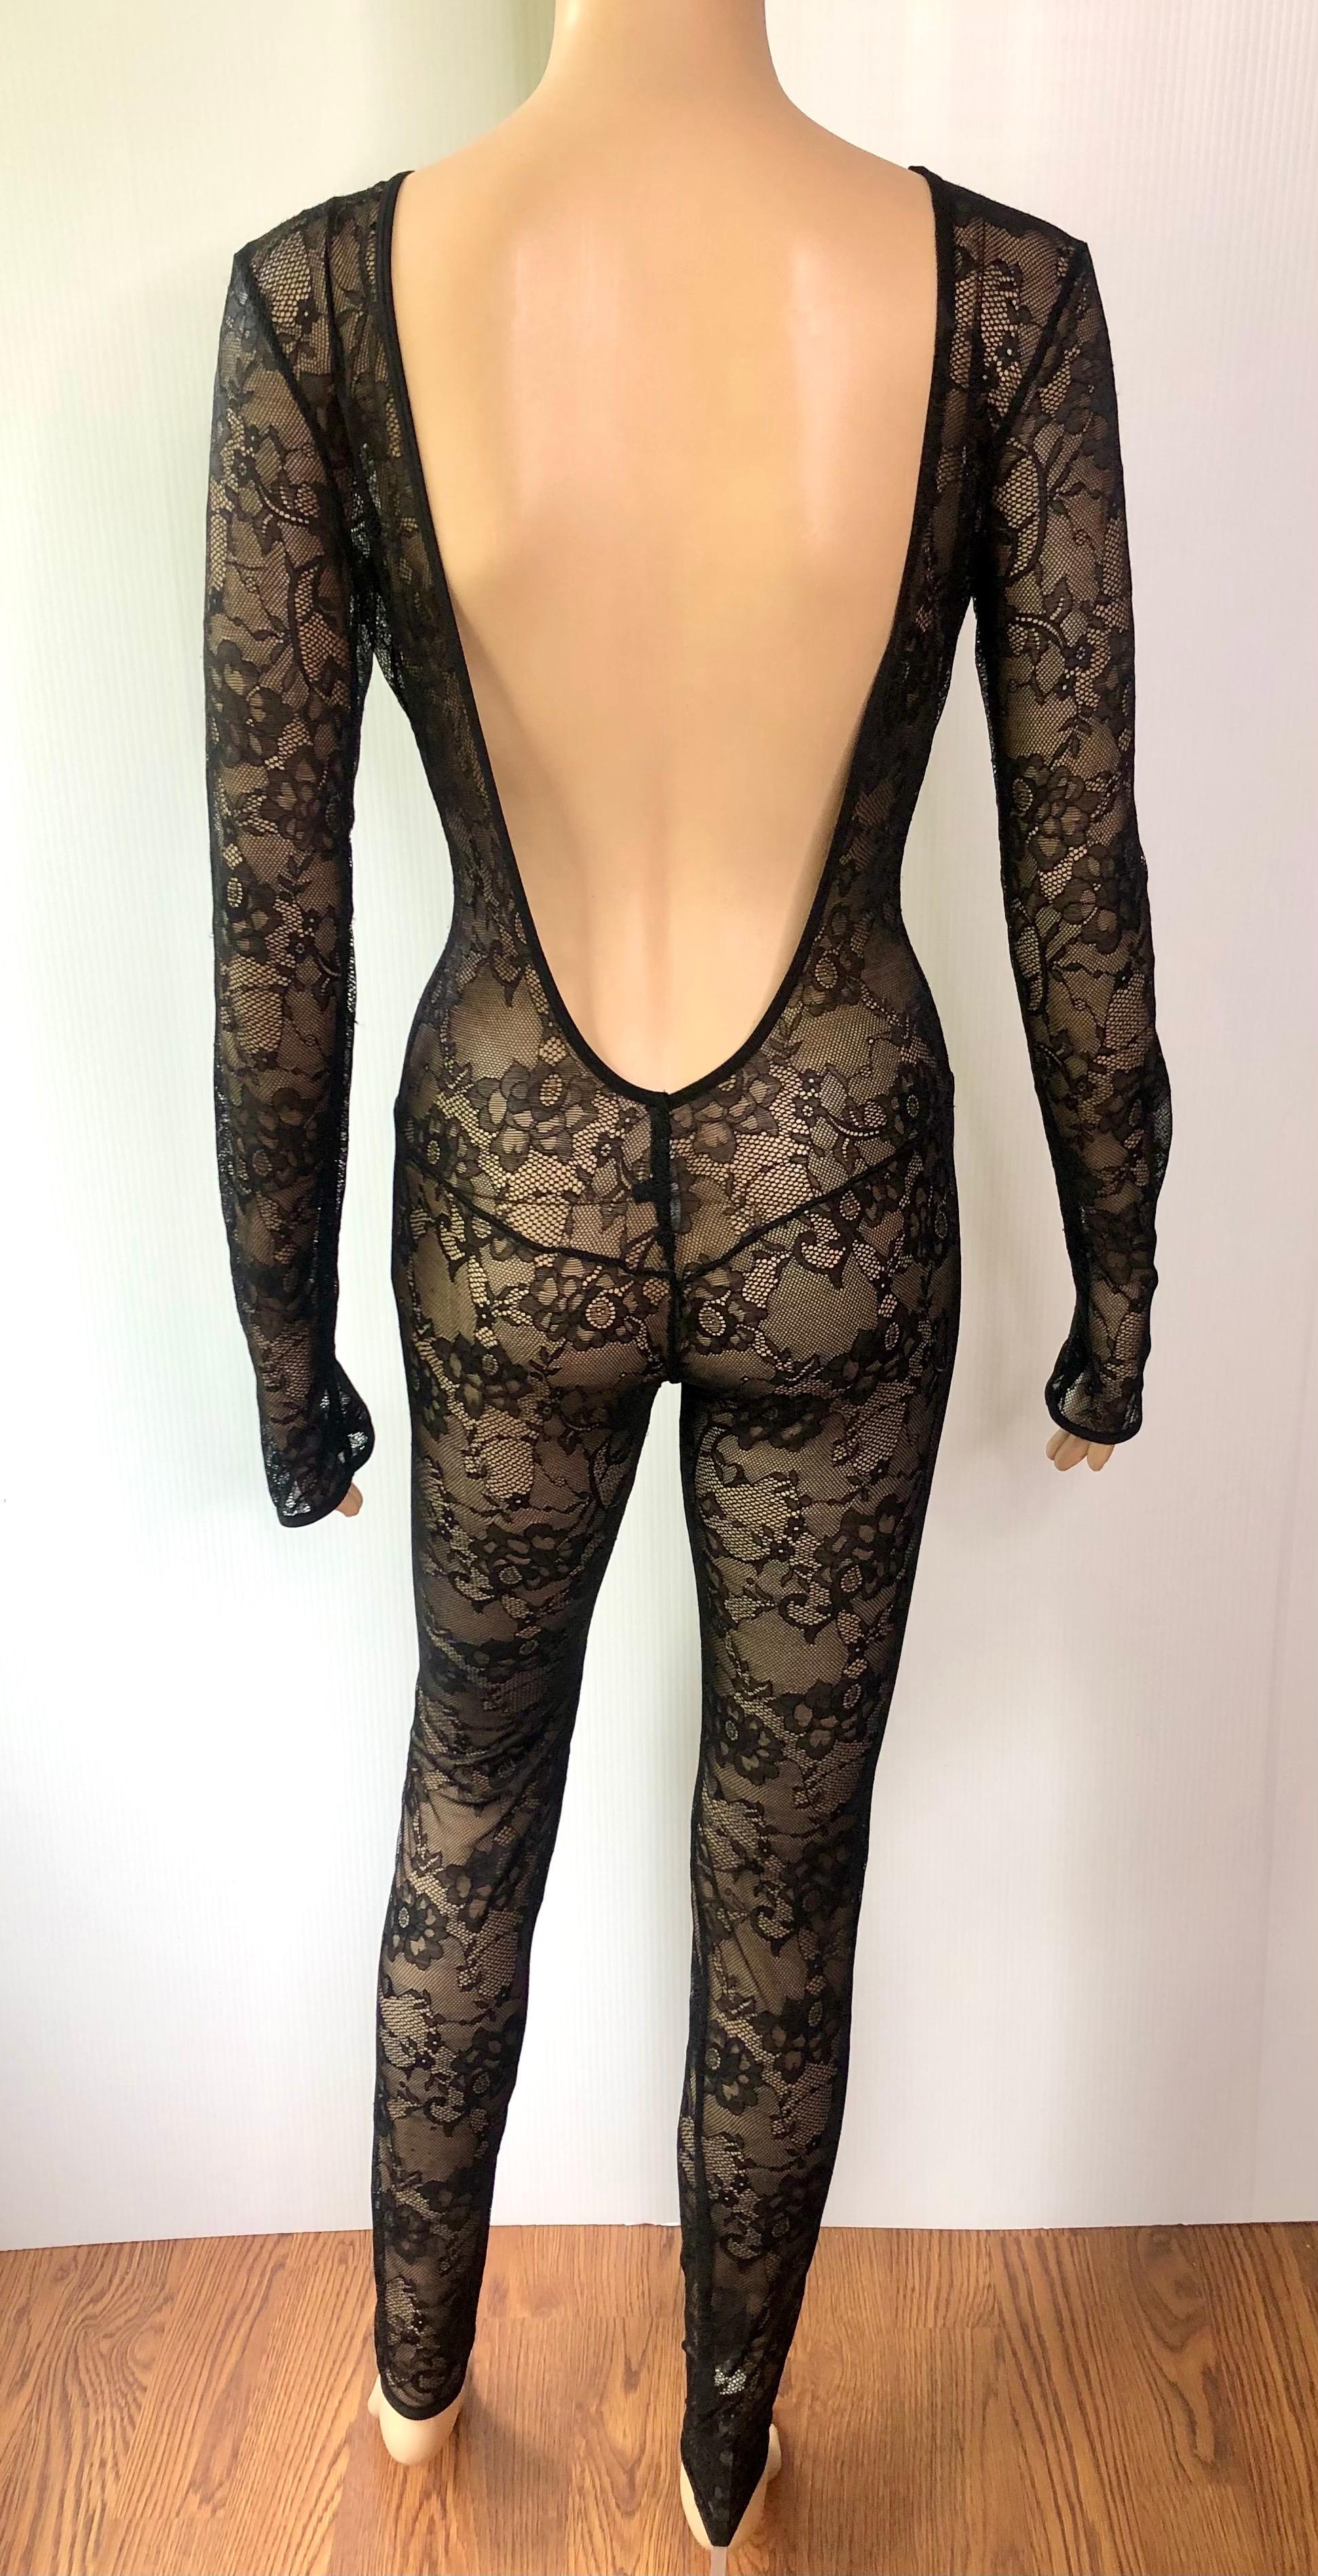 Gucci tiefer Ausschnitt offener Rücken durchsichtige Spitze Bodycon Schwarz Playsuit Jumpsuit für Damen oder Herren